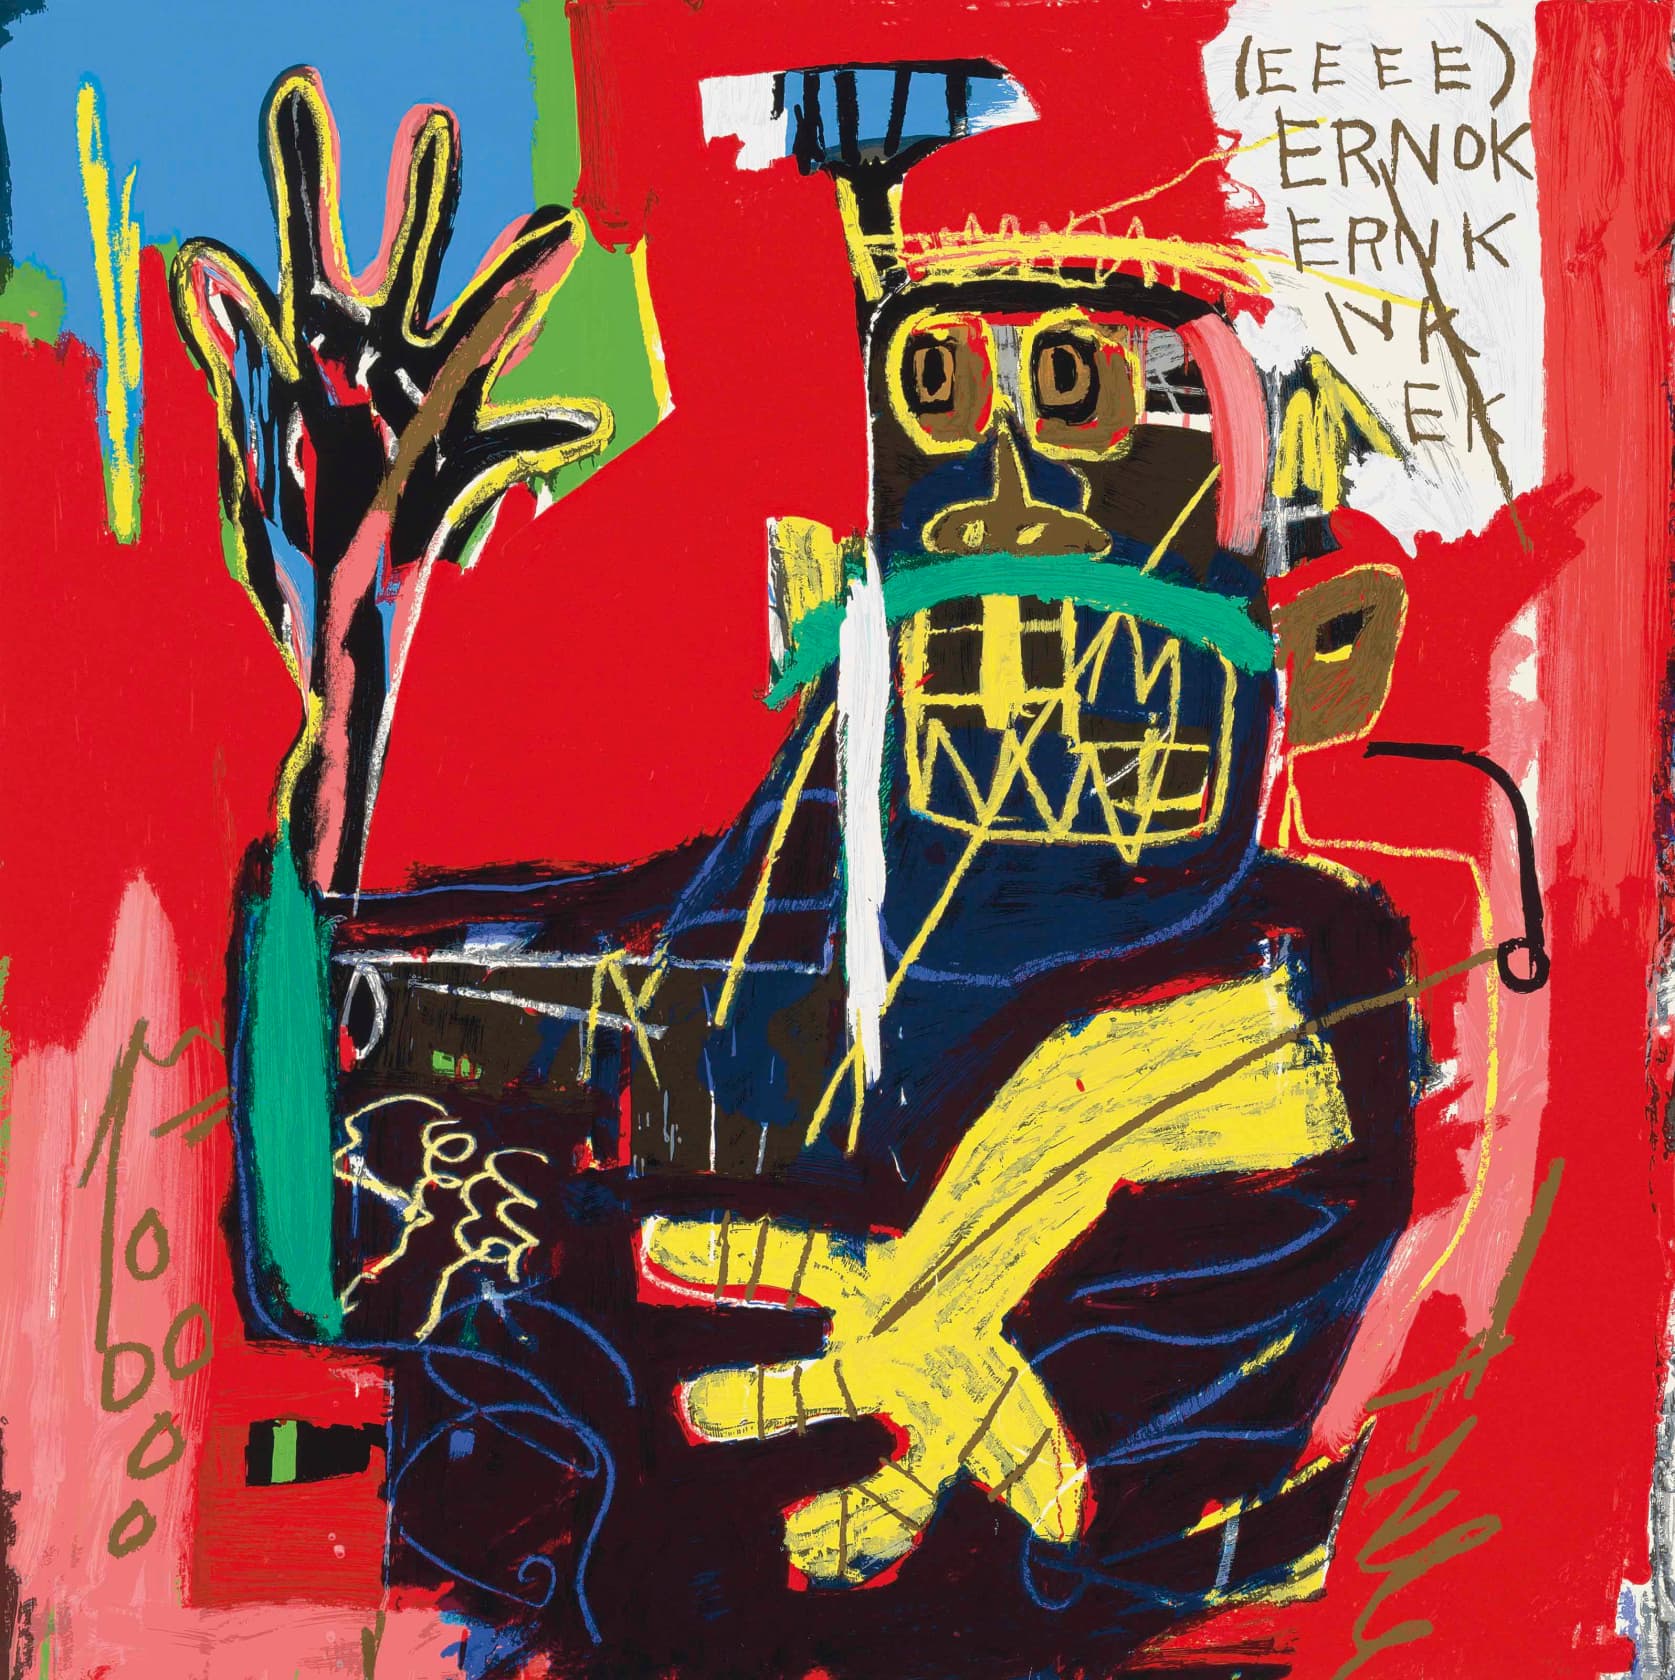 Jean-Michel Basquiat Ernok Screenprint